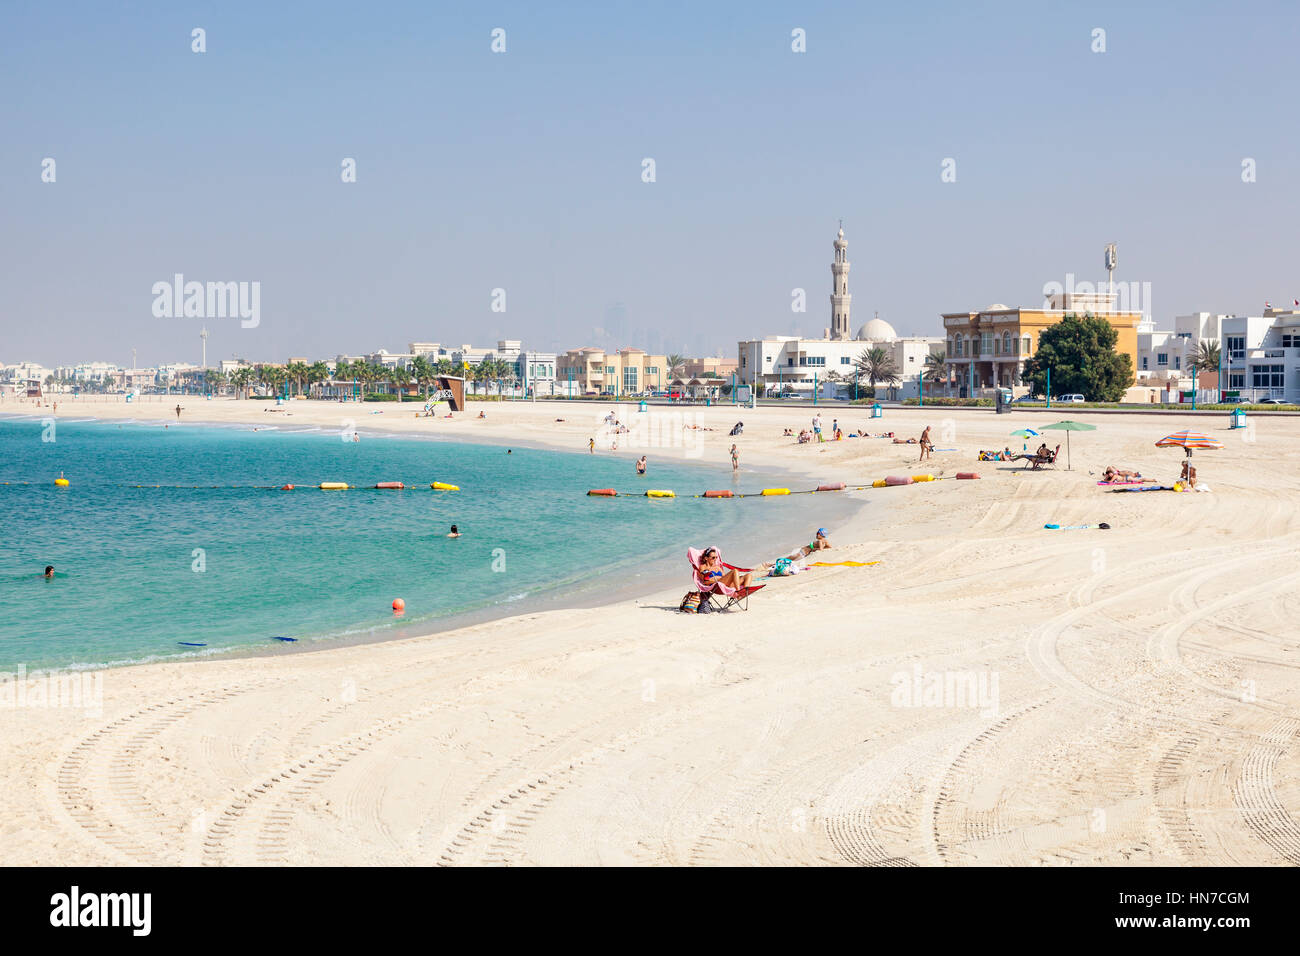 DUBAI, Vereinigte Arabische Emirate - 6. Dezember 2016: Der Umm Suqeim öffentlichen Strand in Dubai. Vereinigte Arabische Emirate, Naher Osten Stockfoto